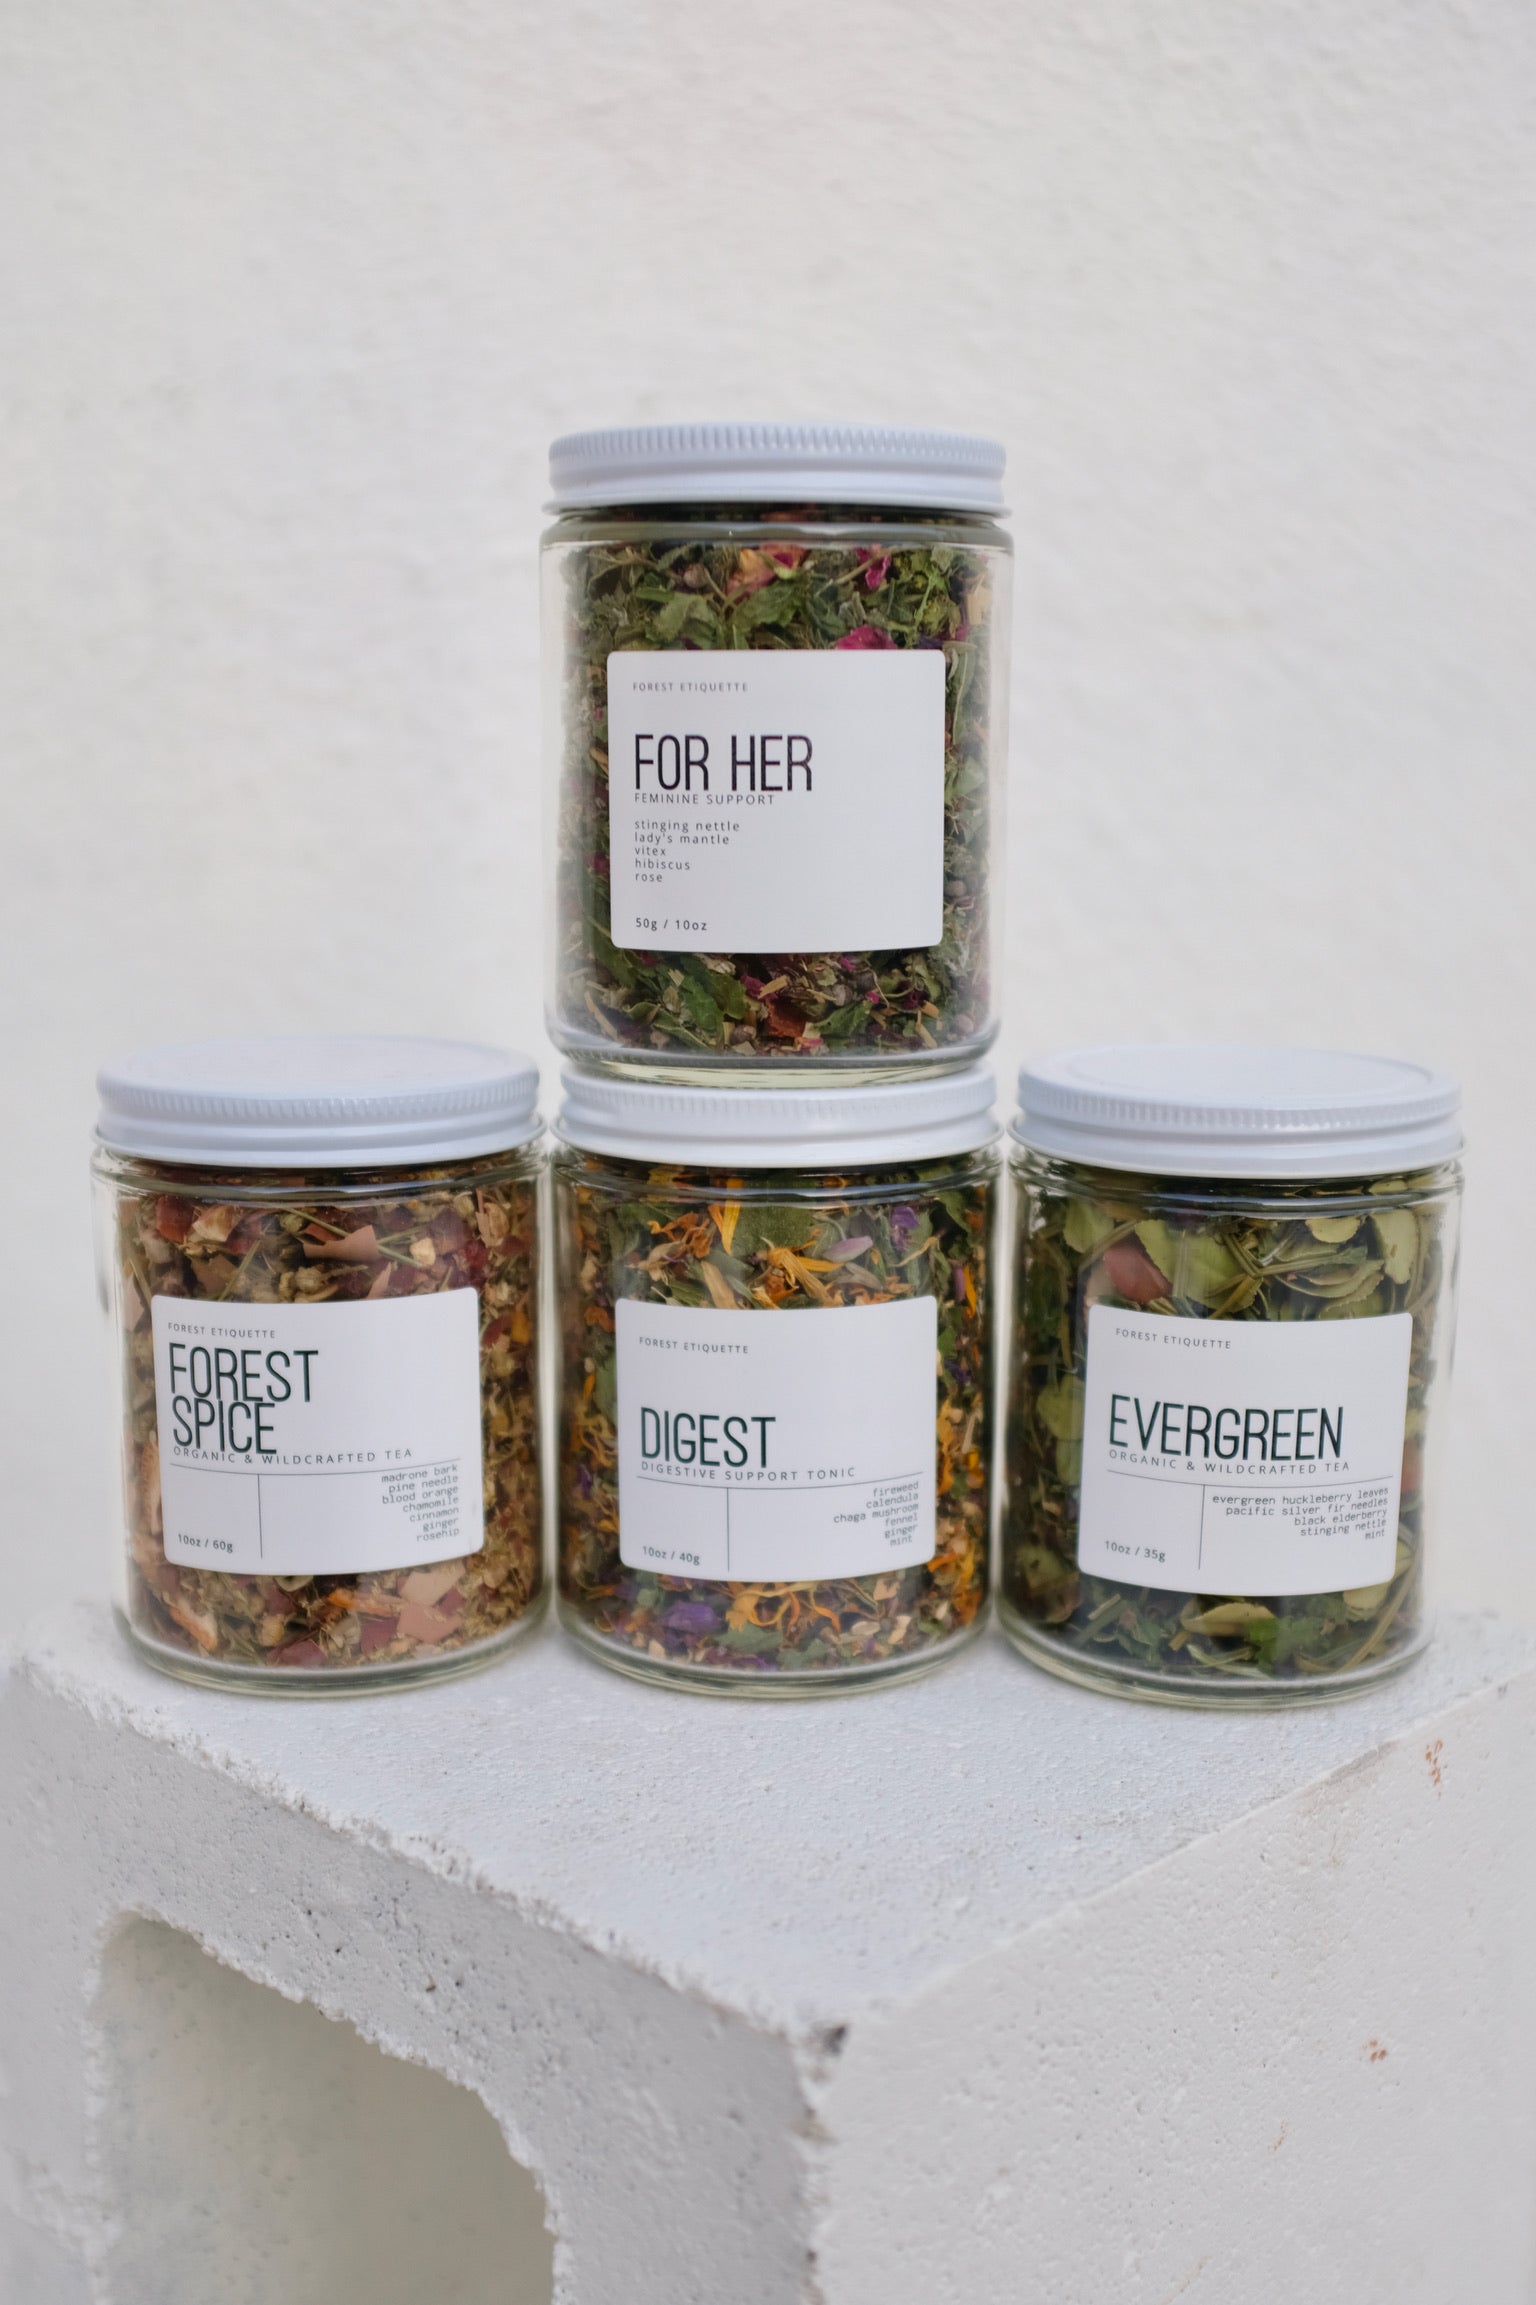 Forest Etiquette Wild Herbal Teas